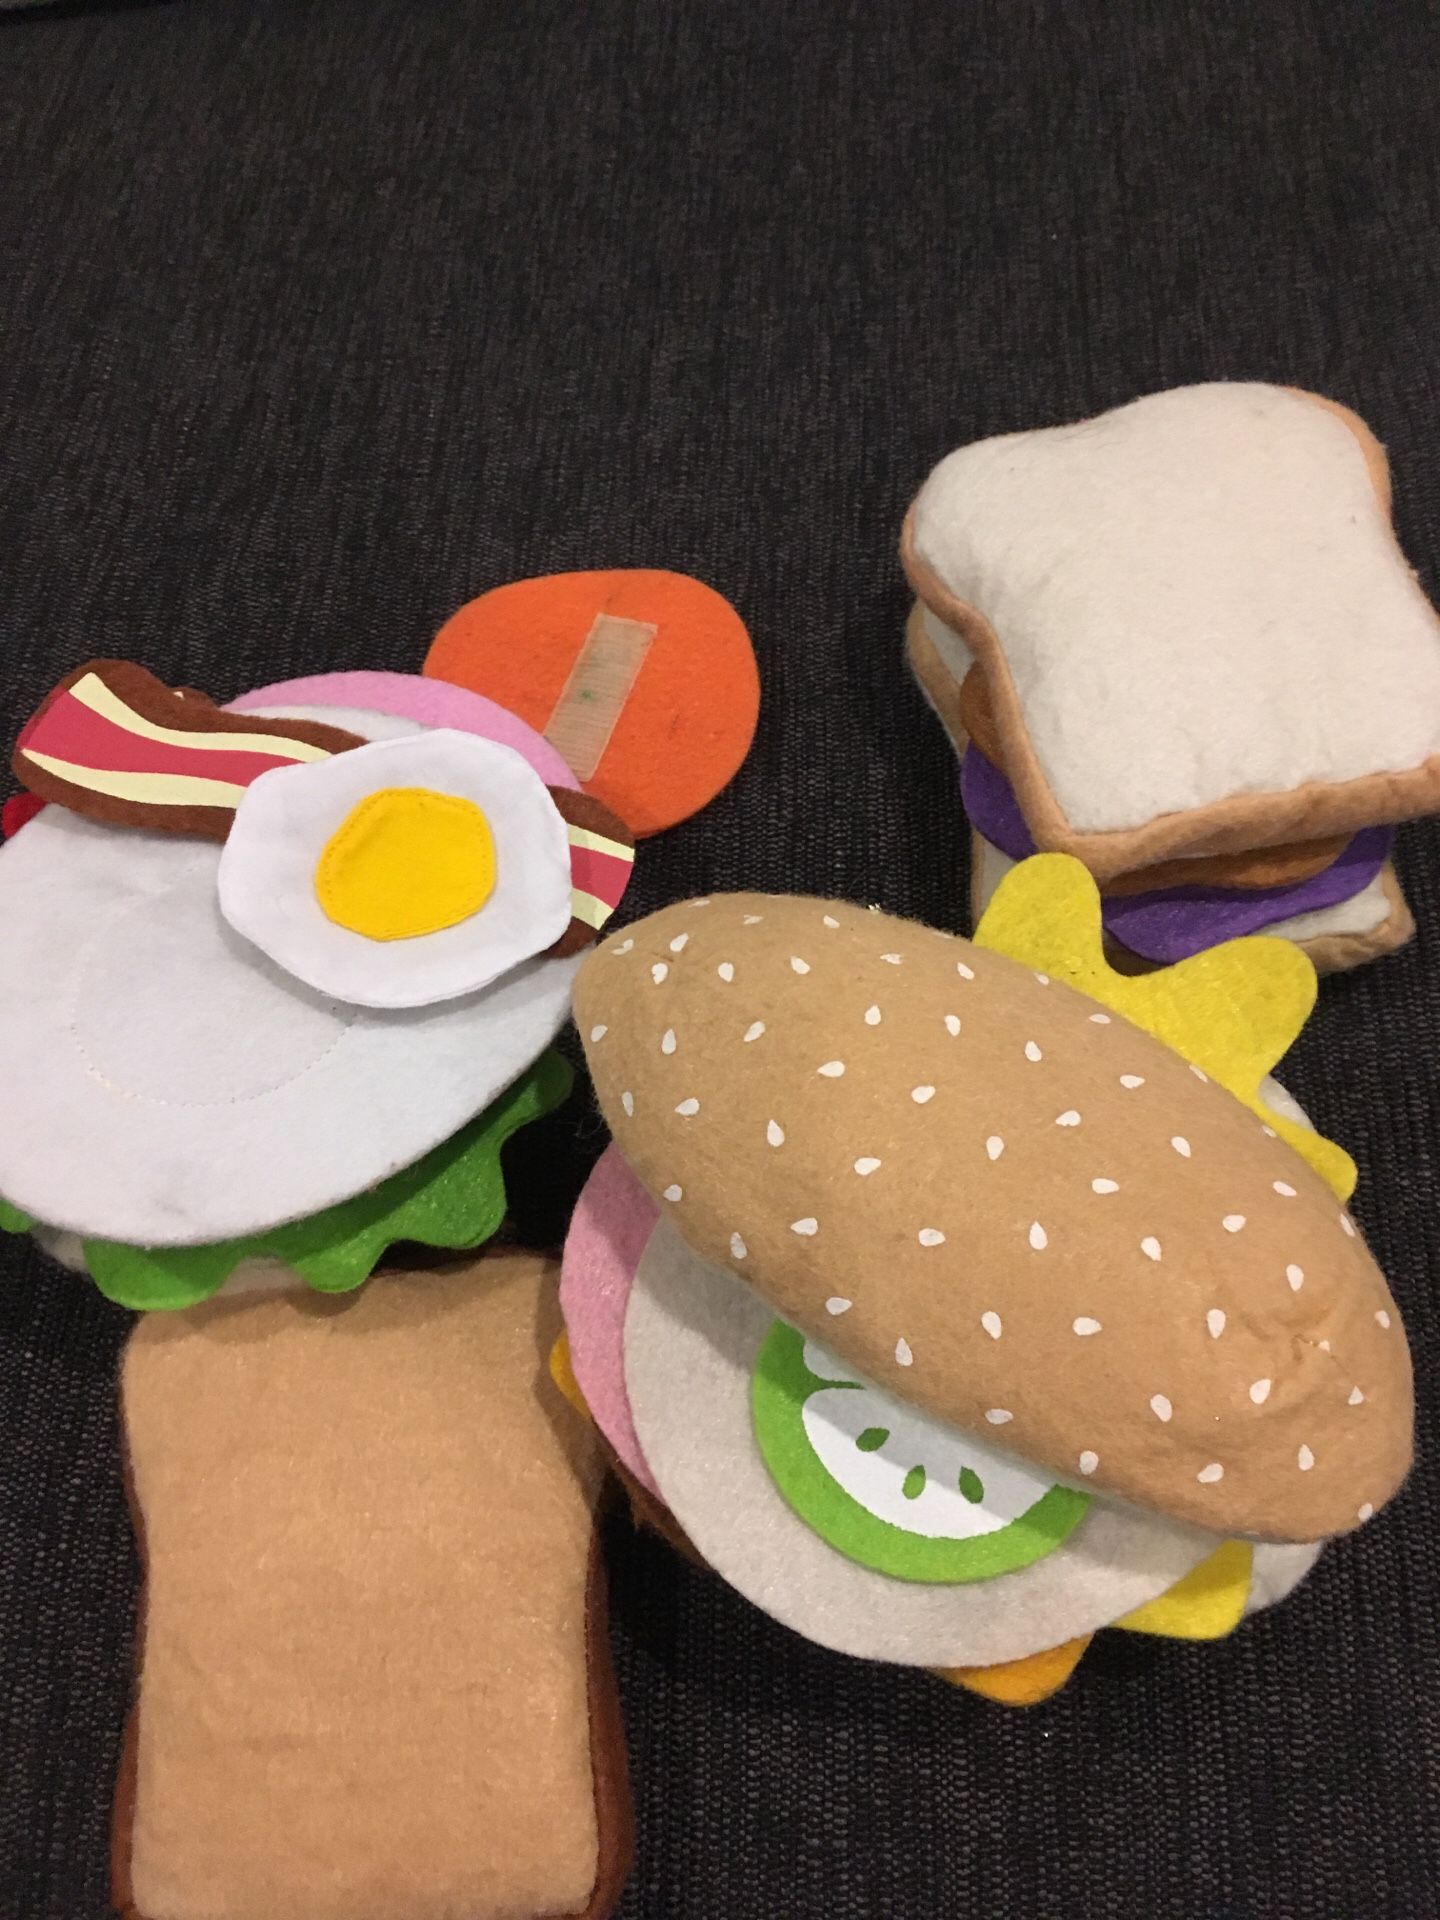 Kids toys - build a sandwich